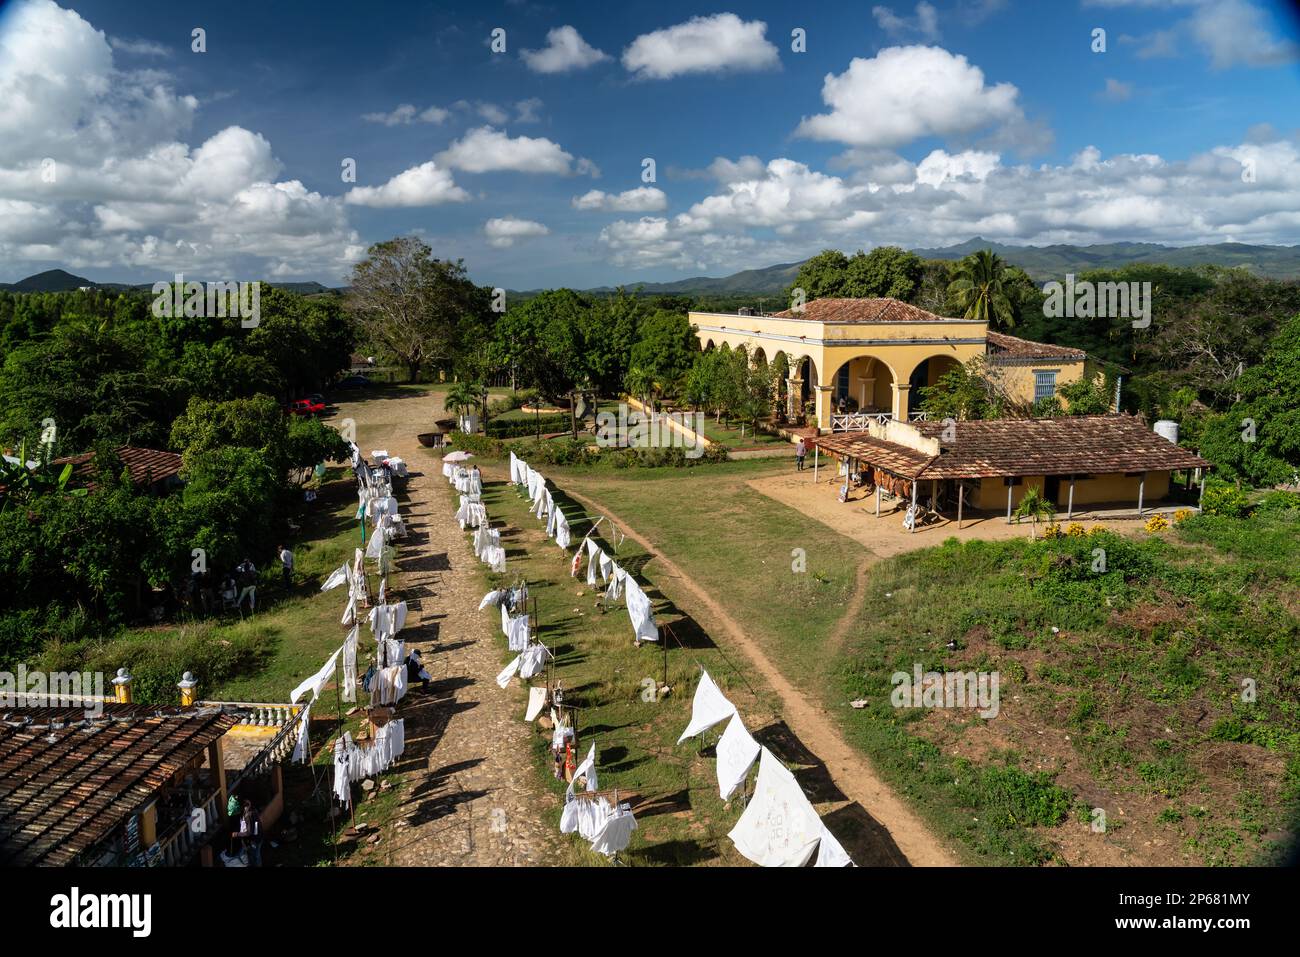 Ehemalige Zuckerplantage Manaca-Iznaga Great House, Valle de los Ingenios, UNESCO-Weltkulturerbe, in der Nähe von Trinidad, Kuba, Westindischen Inseln, Karibik Stockfoto